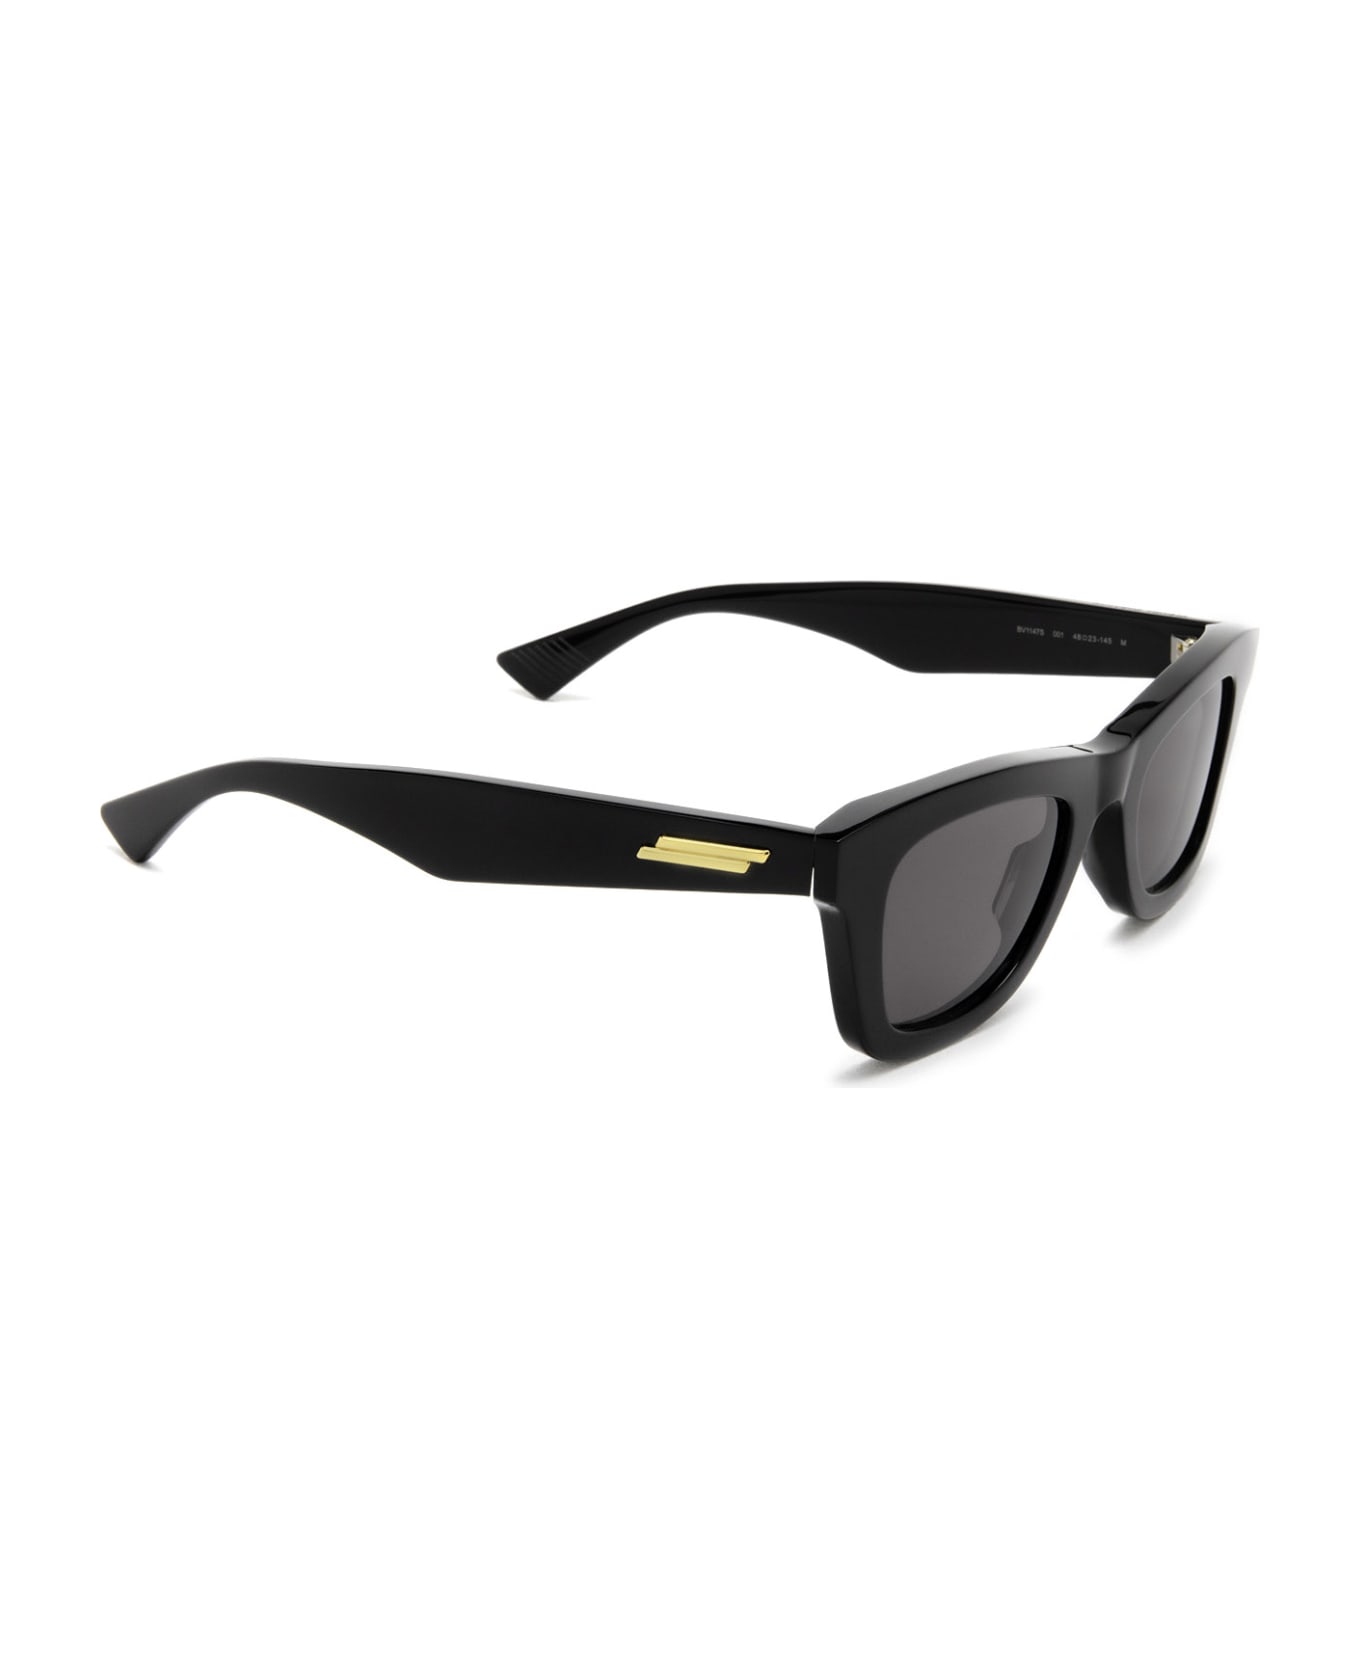 Bottega Veneta Eyewear Bv1147s Black Sunglasses - Black